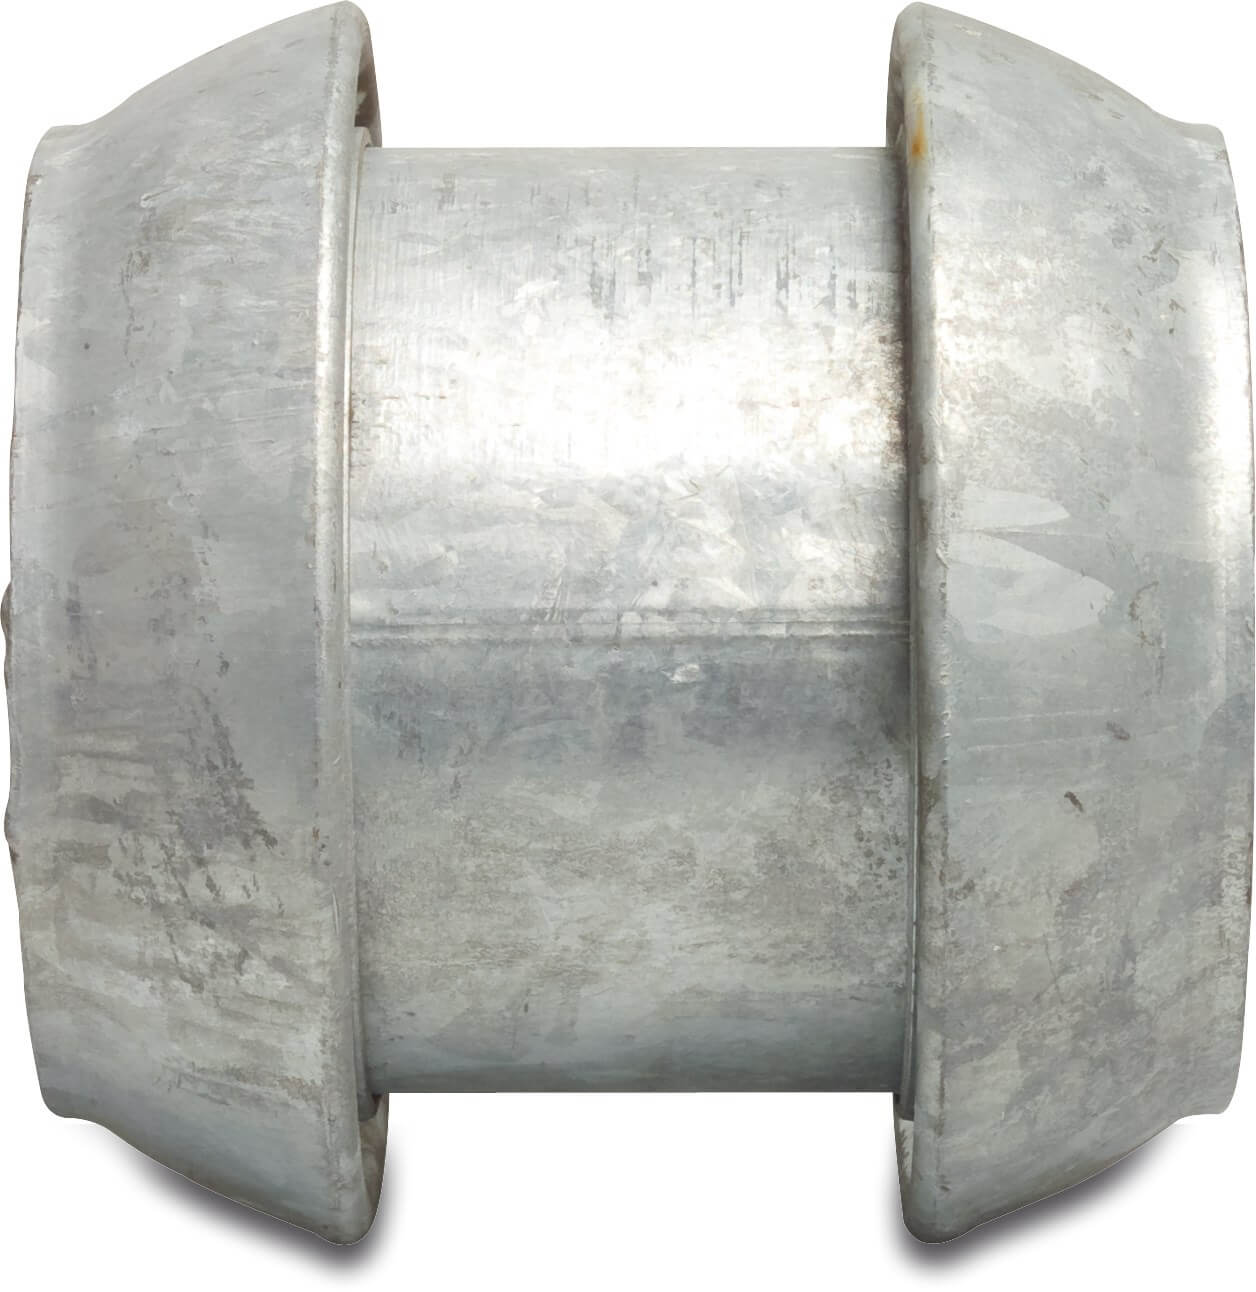 Omvendingskobling stål galvaniseret 108 mm han-del Perrot type Perrot